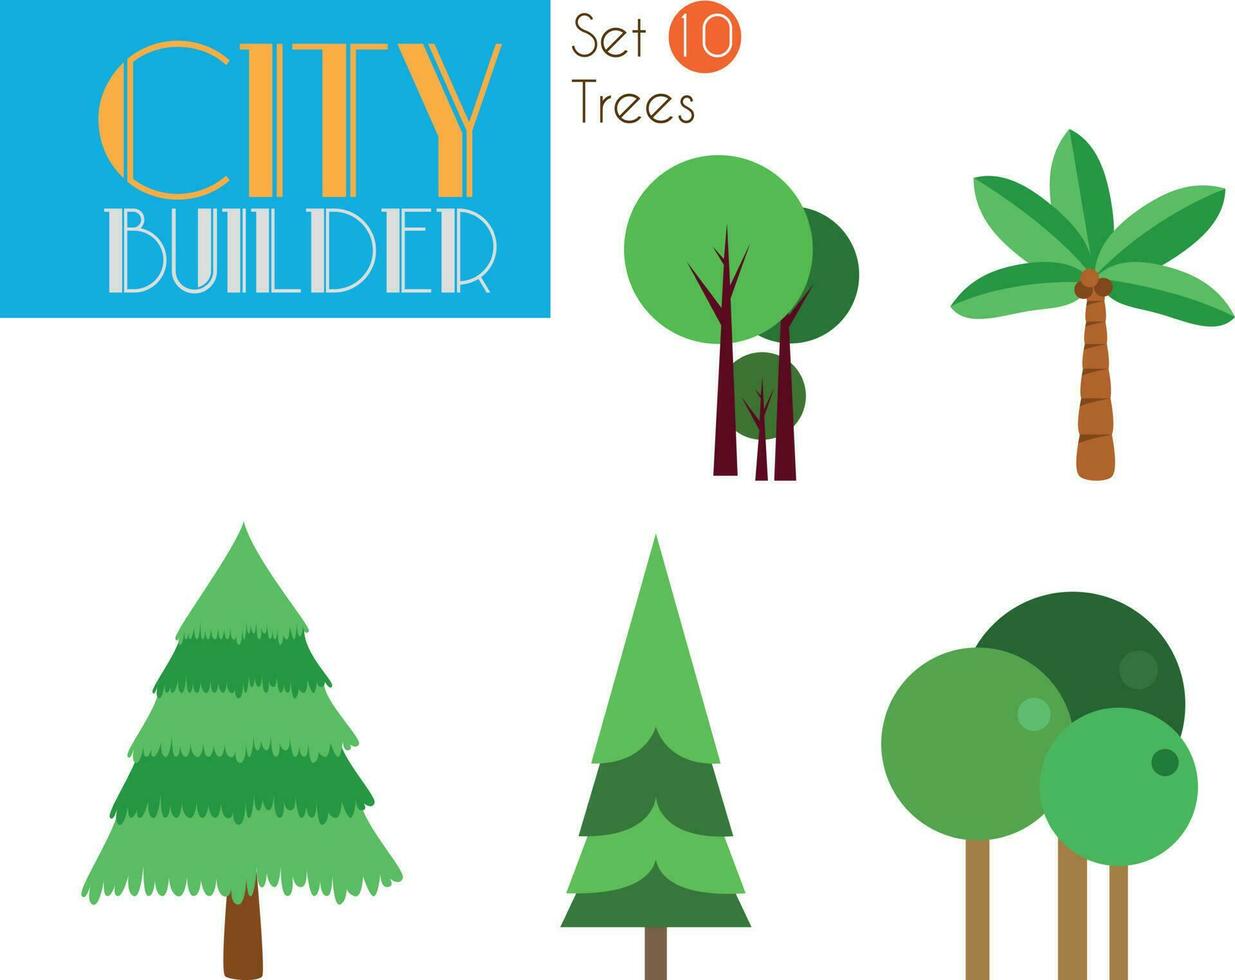 stad bouwer reeks 10. bomen vector